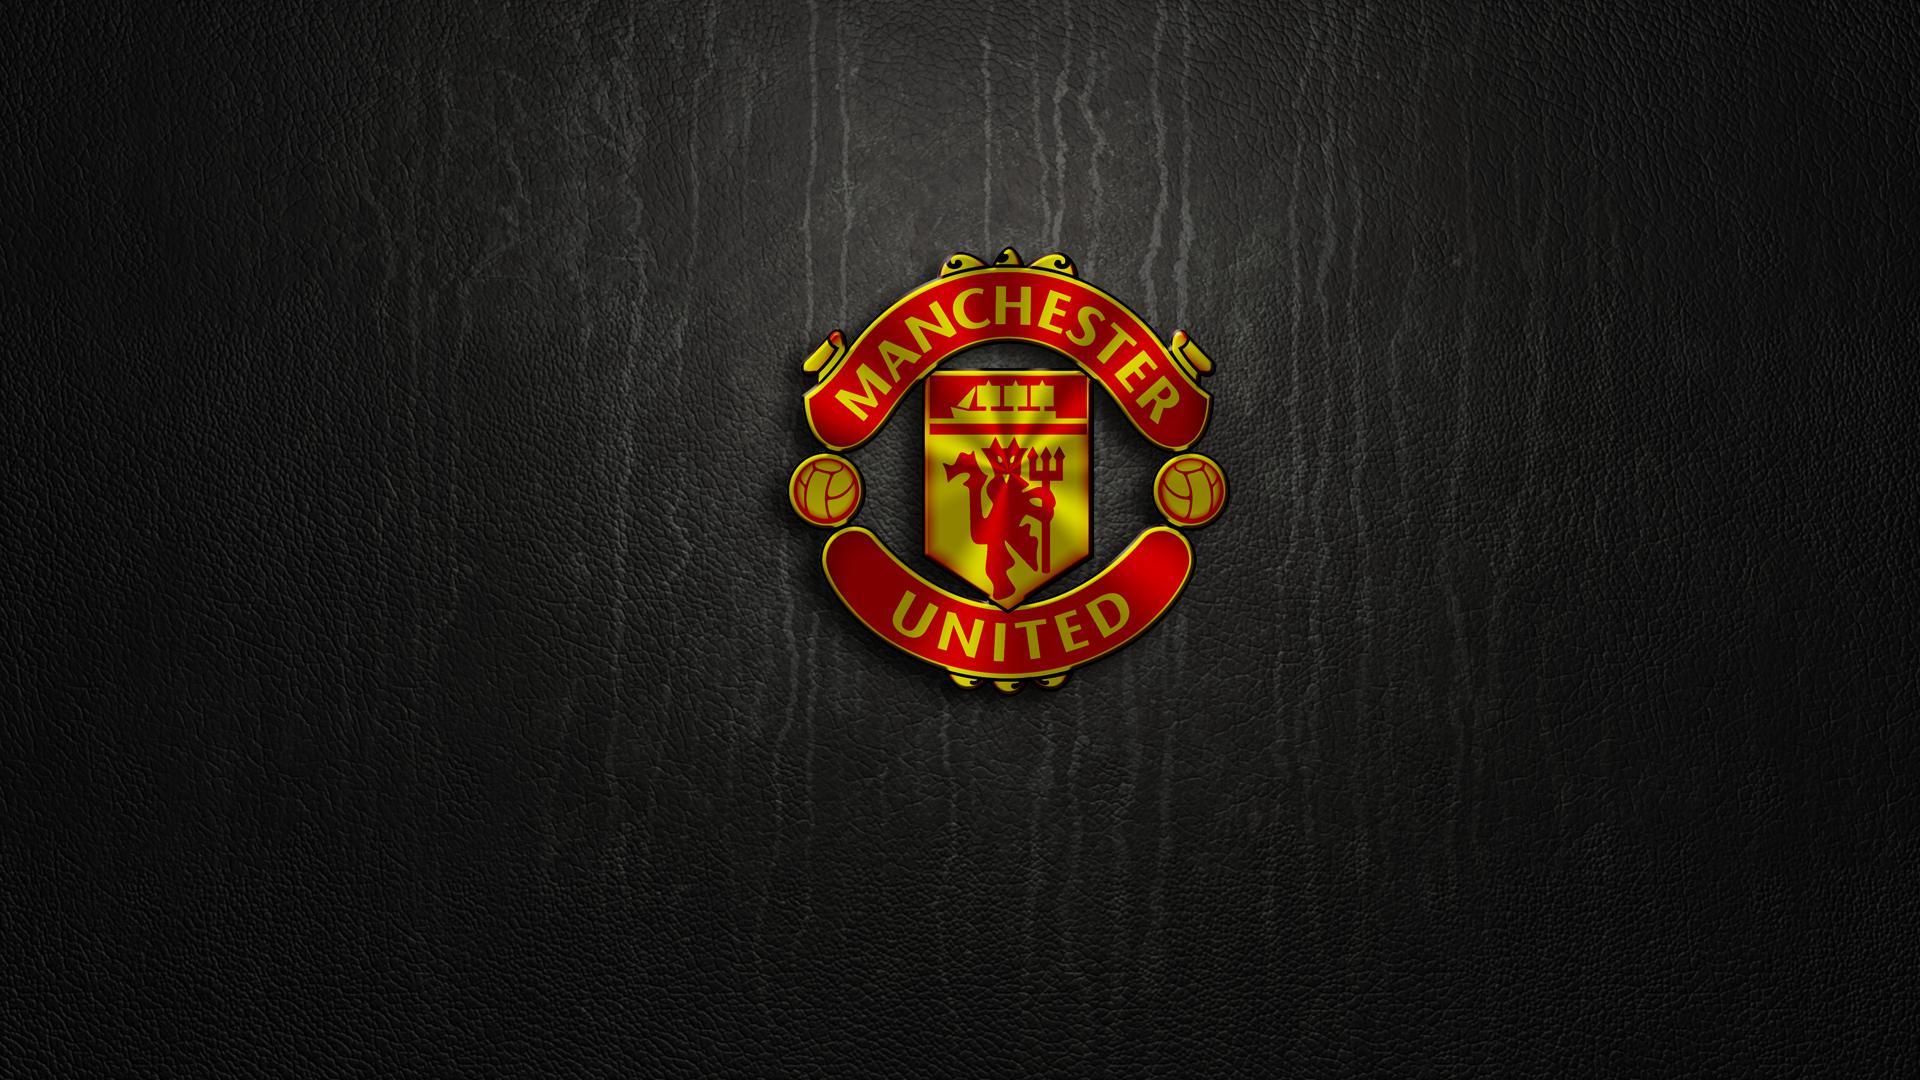 1920 x 1080 · jpeg - Manchester United High Def Logo Wallpapers | PixelsTalk